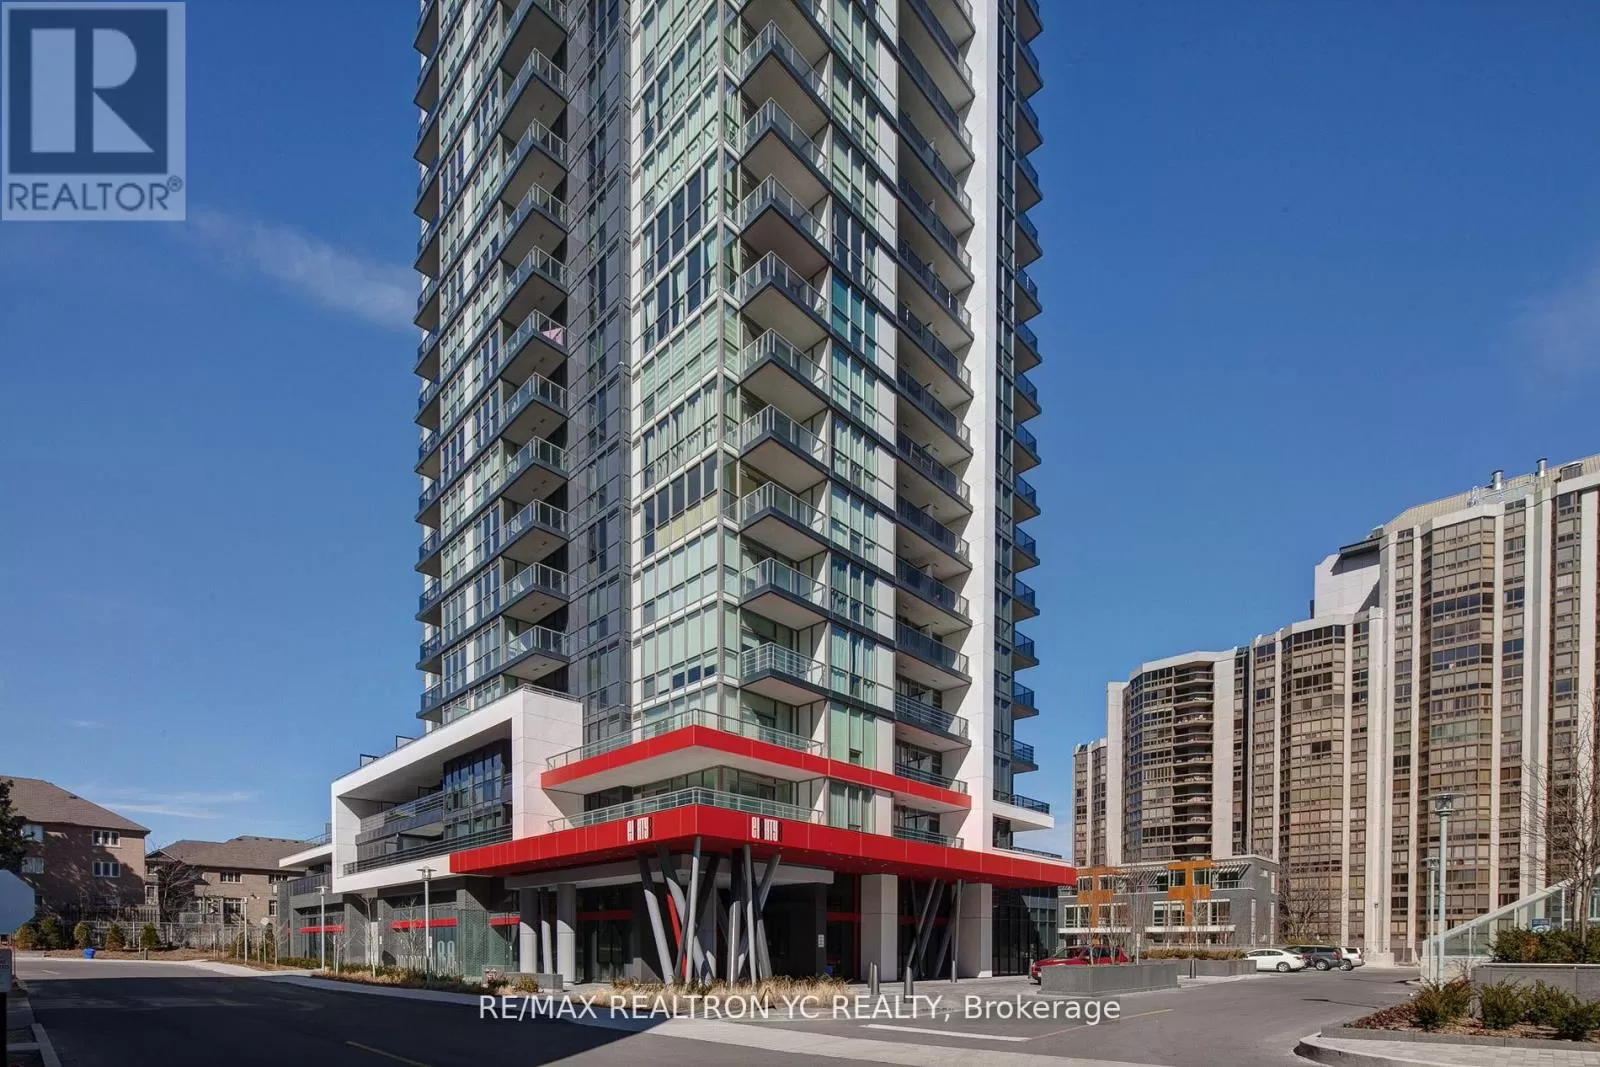 Apartment for rent: 2507 - 88 Sheppard Avenue E, Toronto, Ontario M2N 0G9